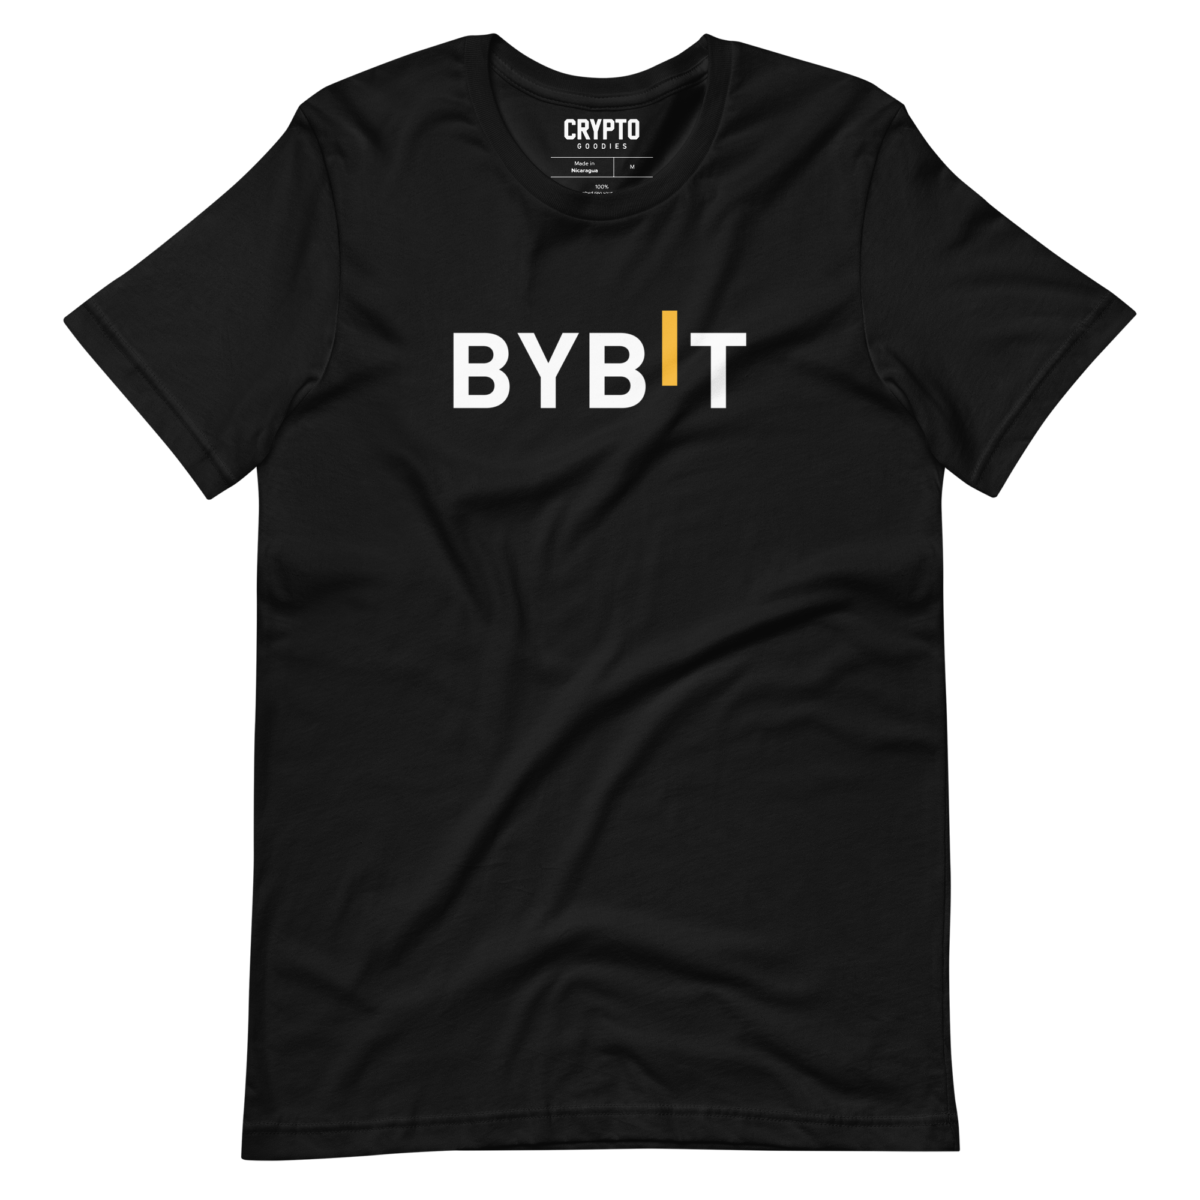 unisex staple t shirt black front 6321c932ca571 - Bybit T-Shirt